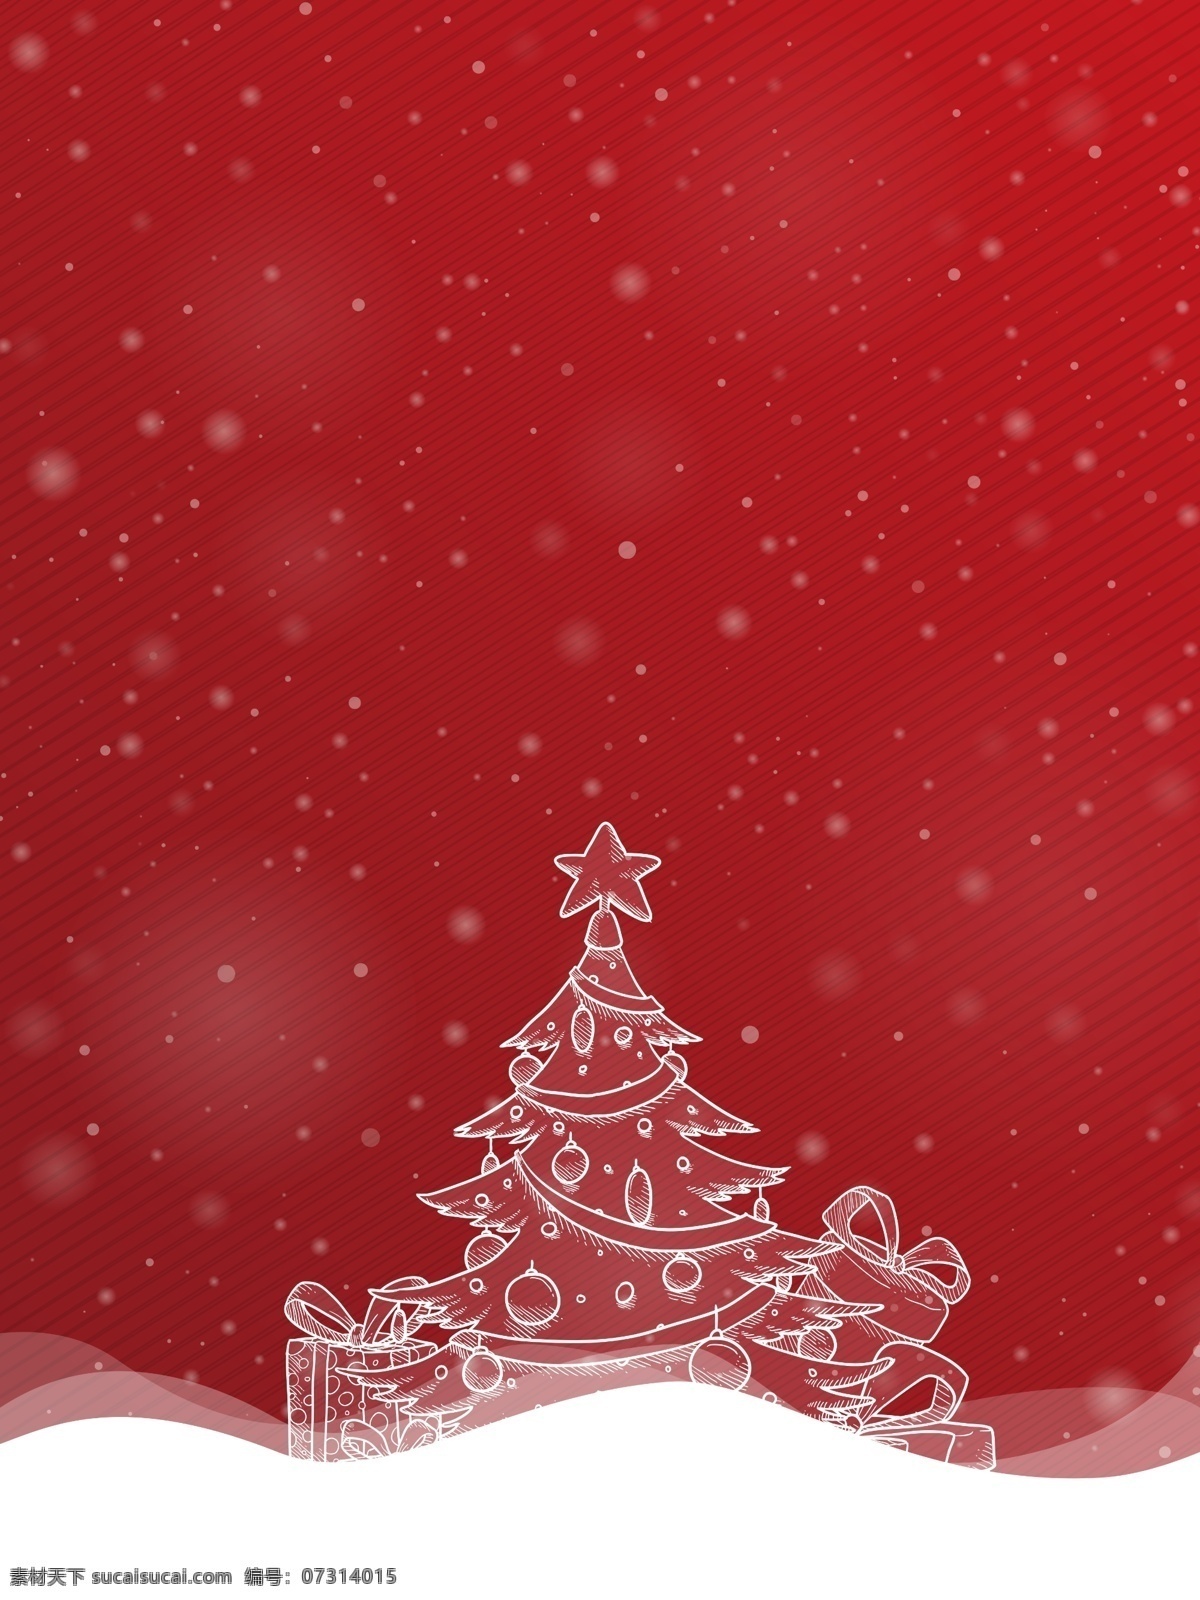 简约 圣诞快乐 促销 宣传 背景 红色 大气 喜庆 礼物 蝴蝶结 棒棒糖 雪地 雪人 圣诞树 圣诞球 圣诞挂饰 雪花